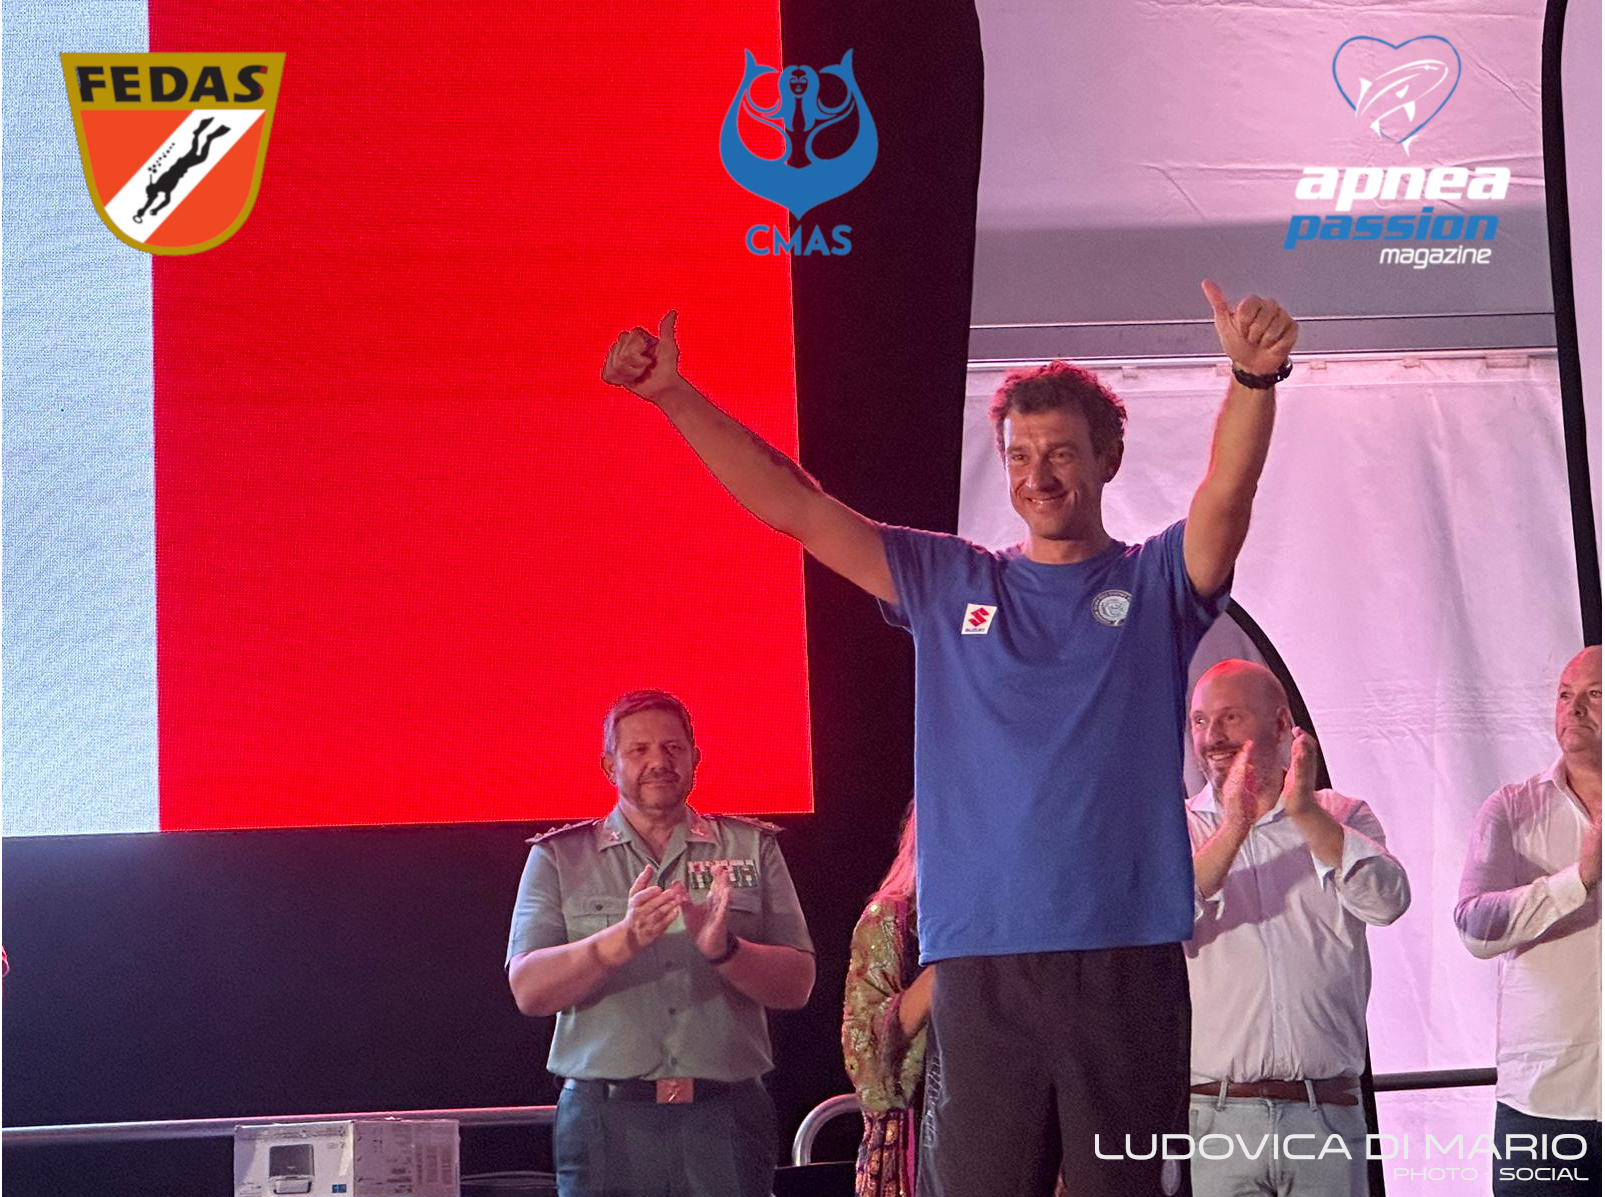 L’anconetano Giacomo De Mola, conquista il terzo posto al Campionato del Mondo di pesca in apnea.